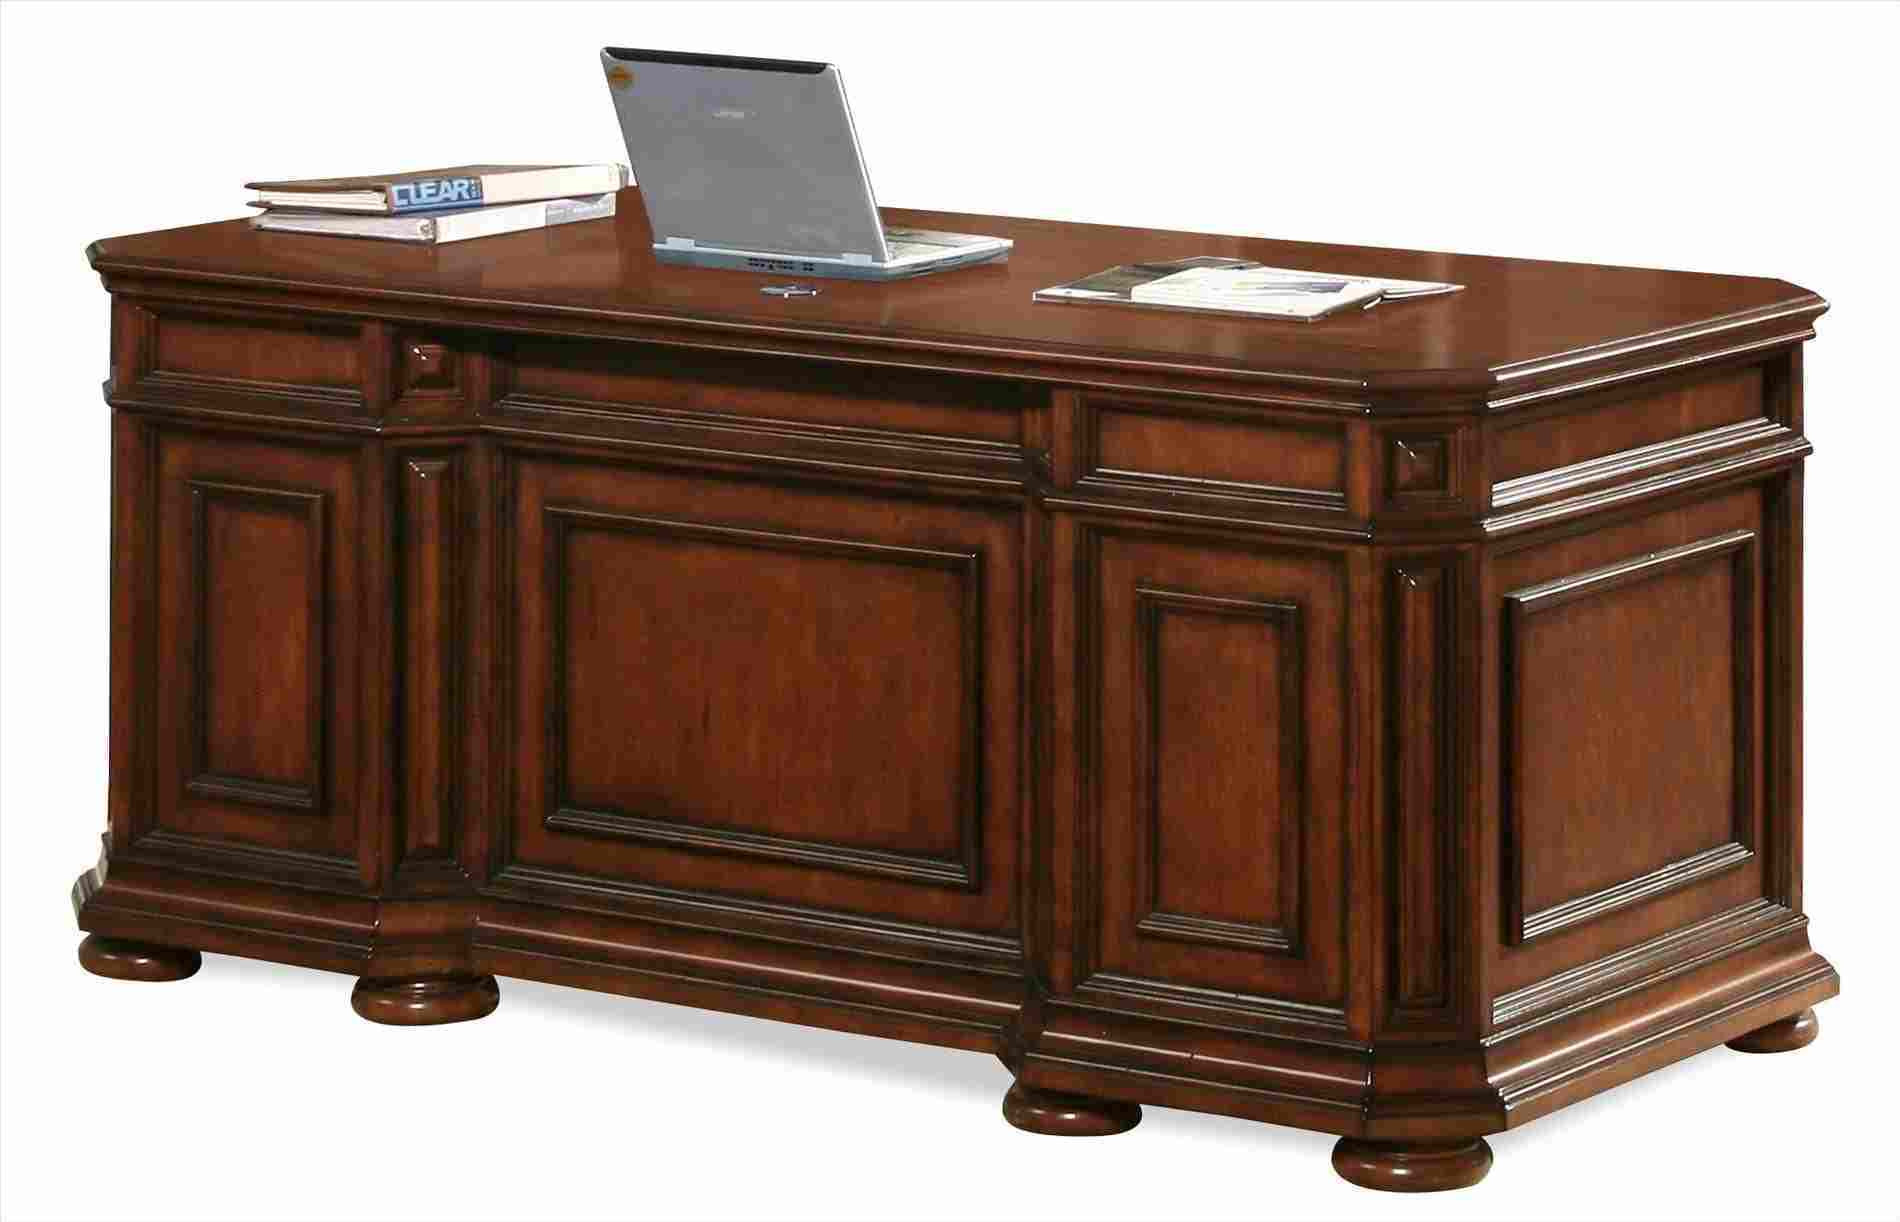 Best ideas about DIY Executive Desk Plans
. Save or Pin diy executive desk plans Now.